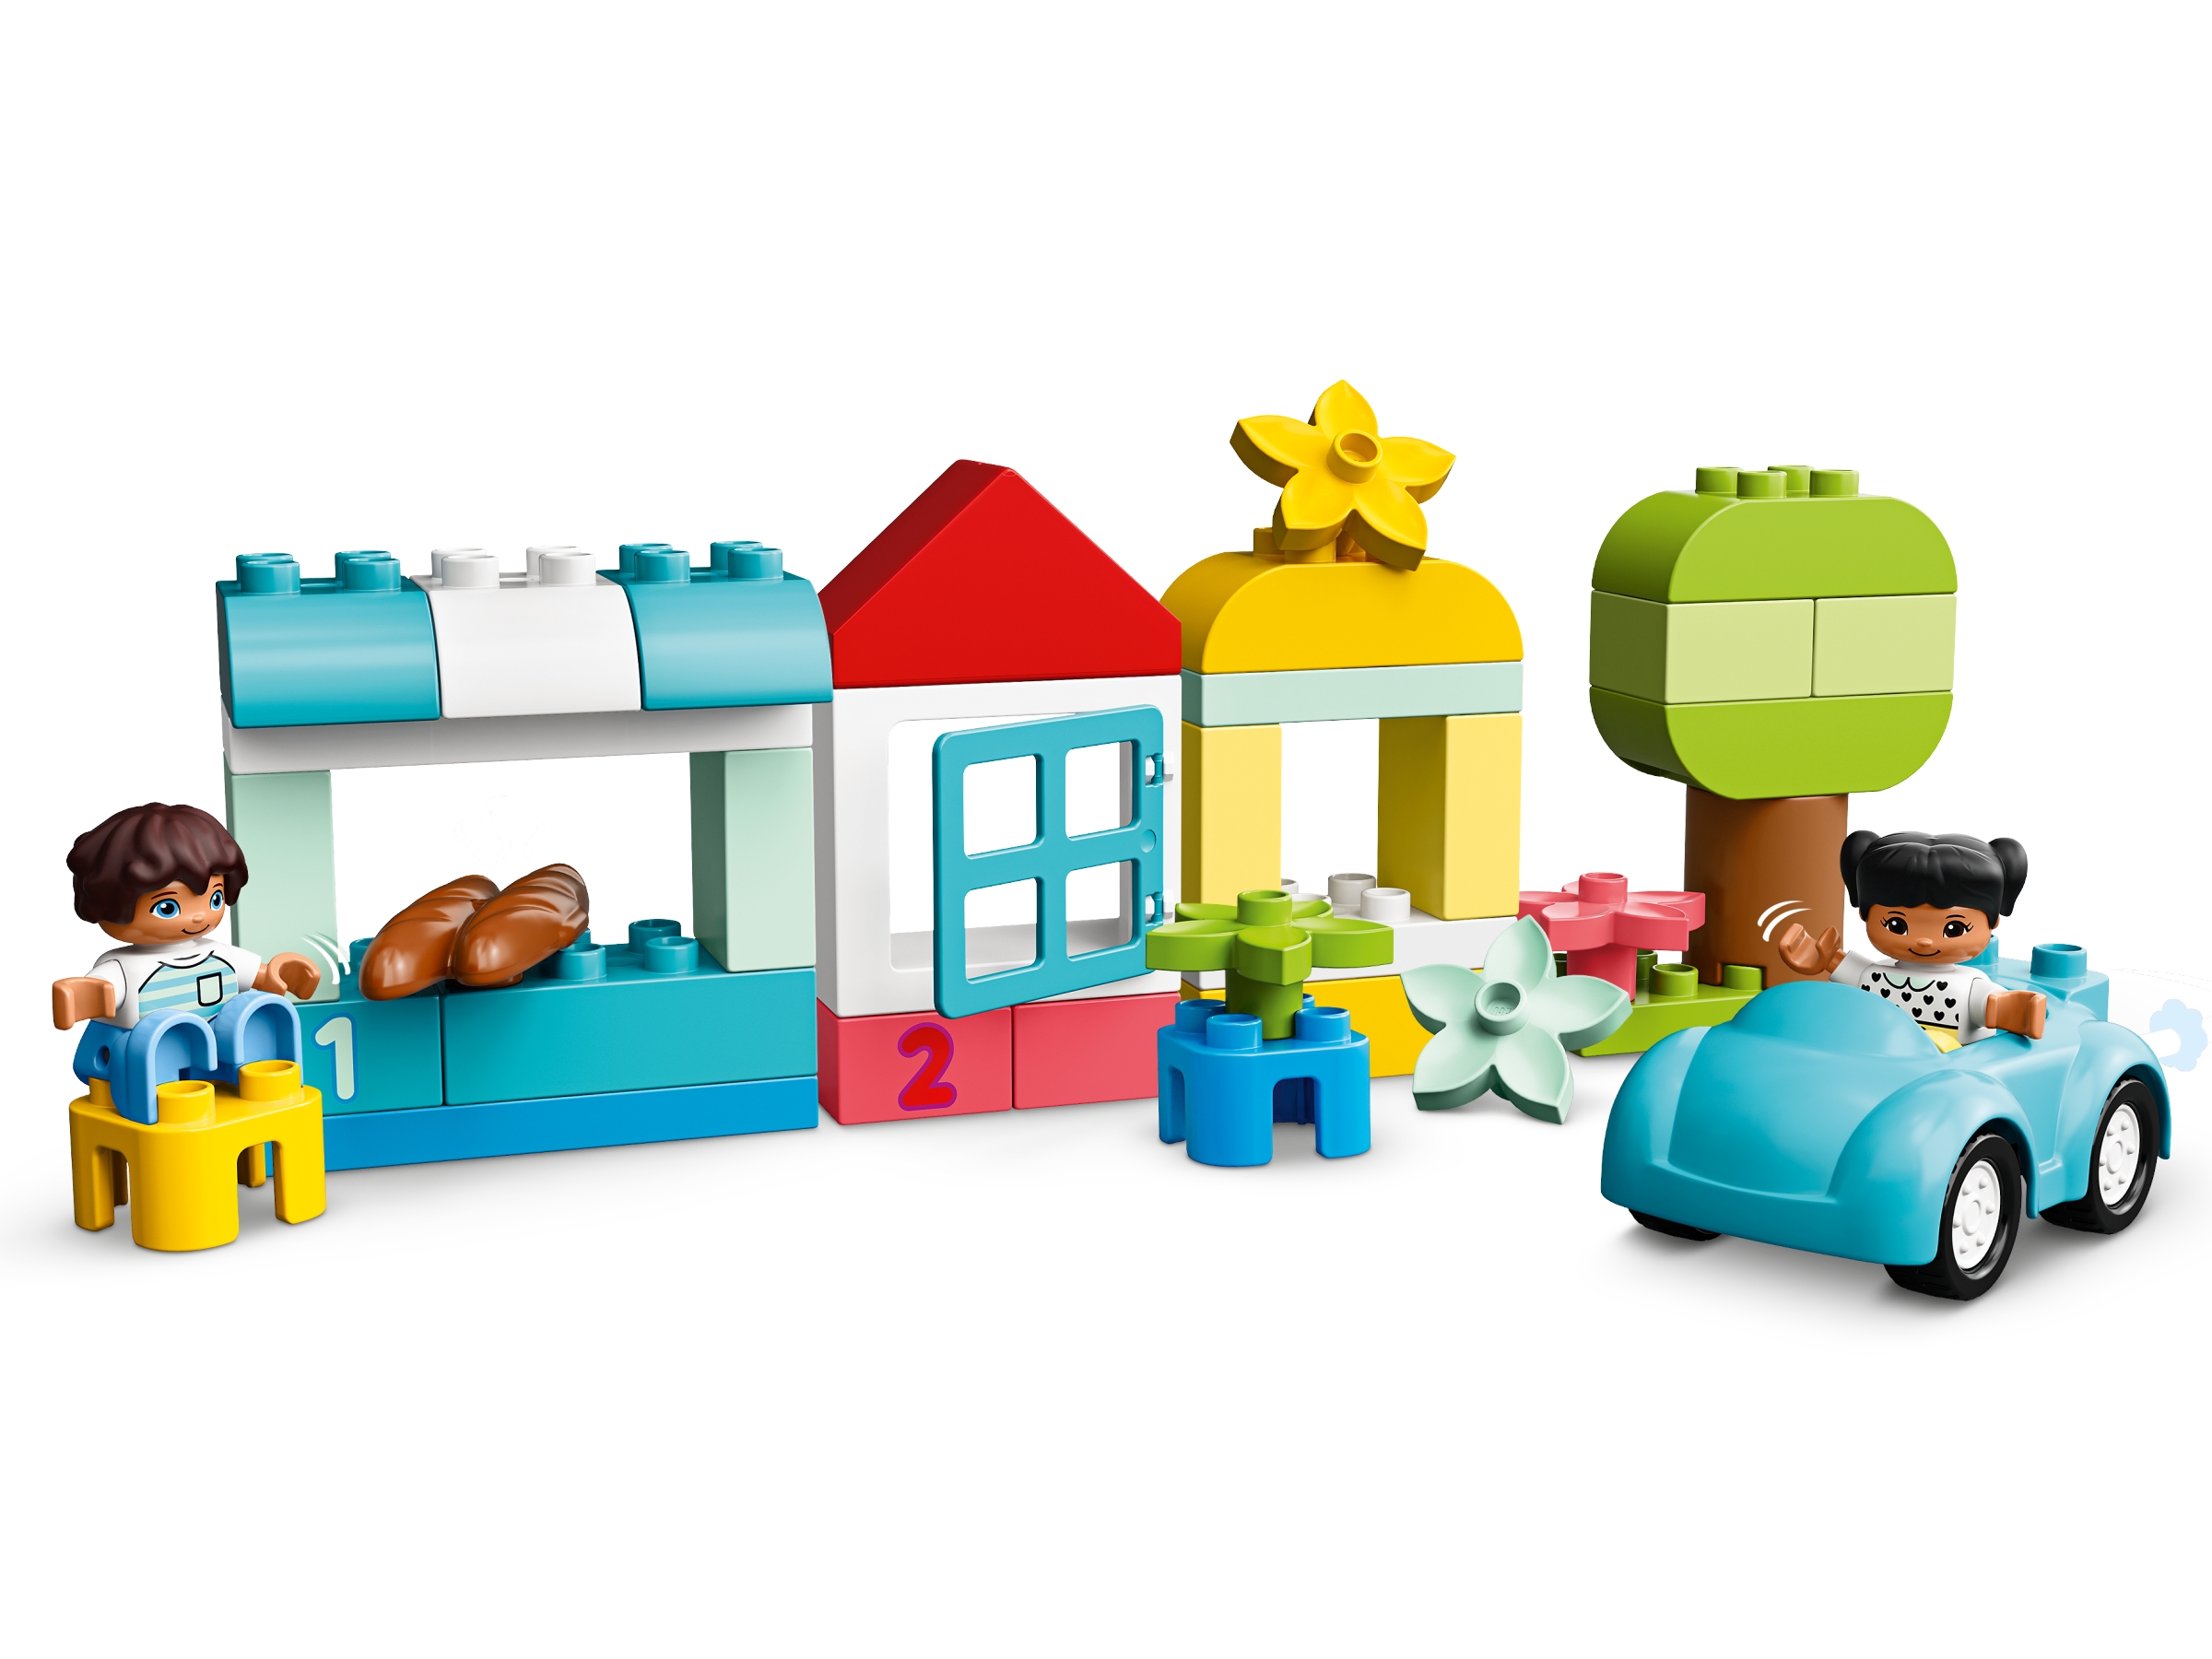 LEGO DUPLO Classic 10913 La Boîte De Briques Jeu De Construction pour Bébés  1 an et Demi pas cher 